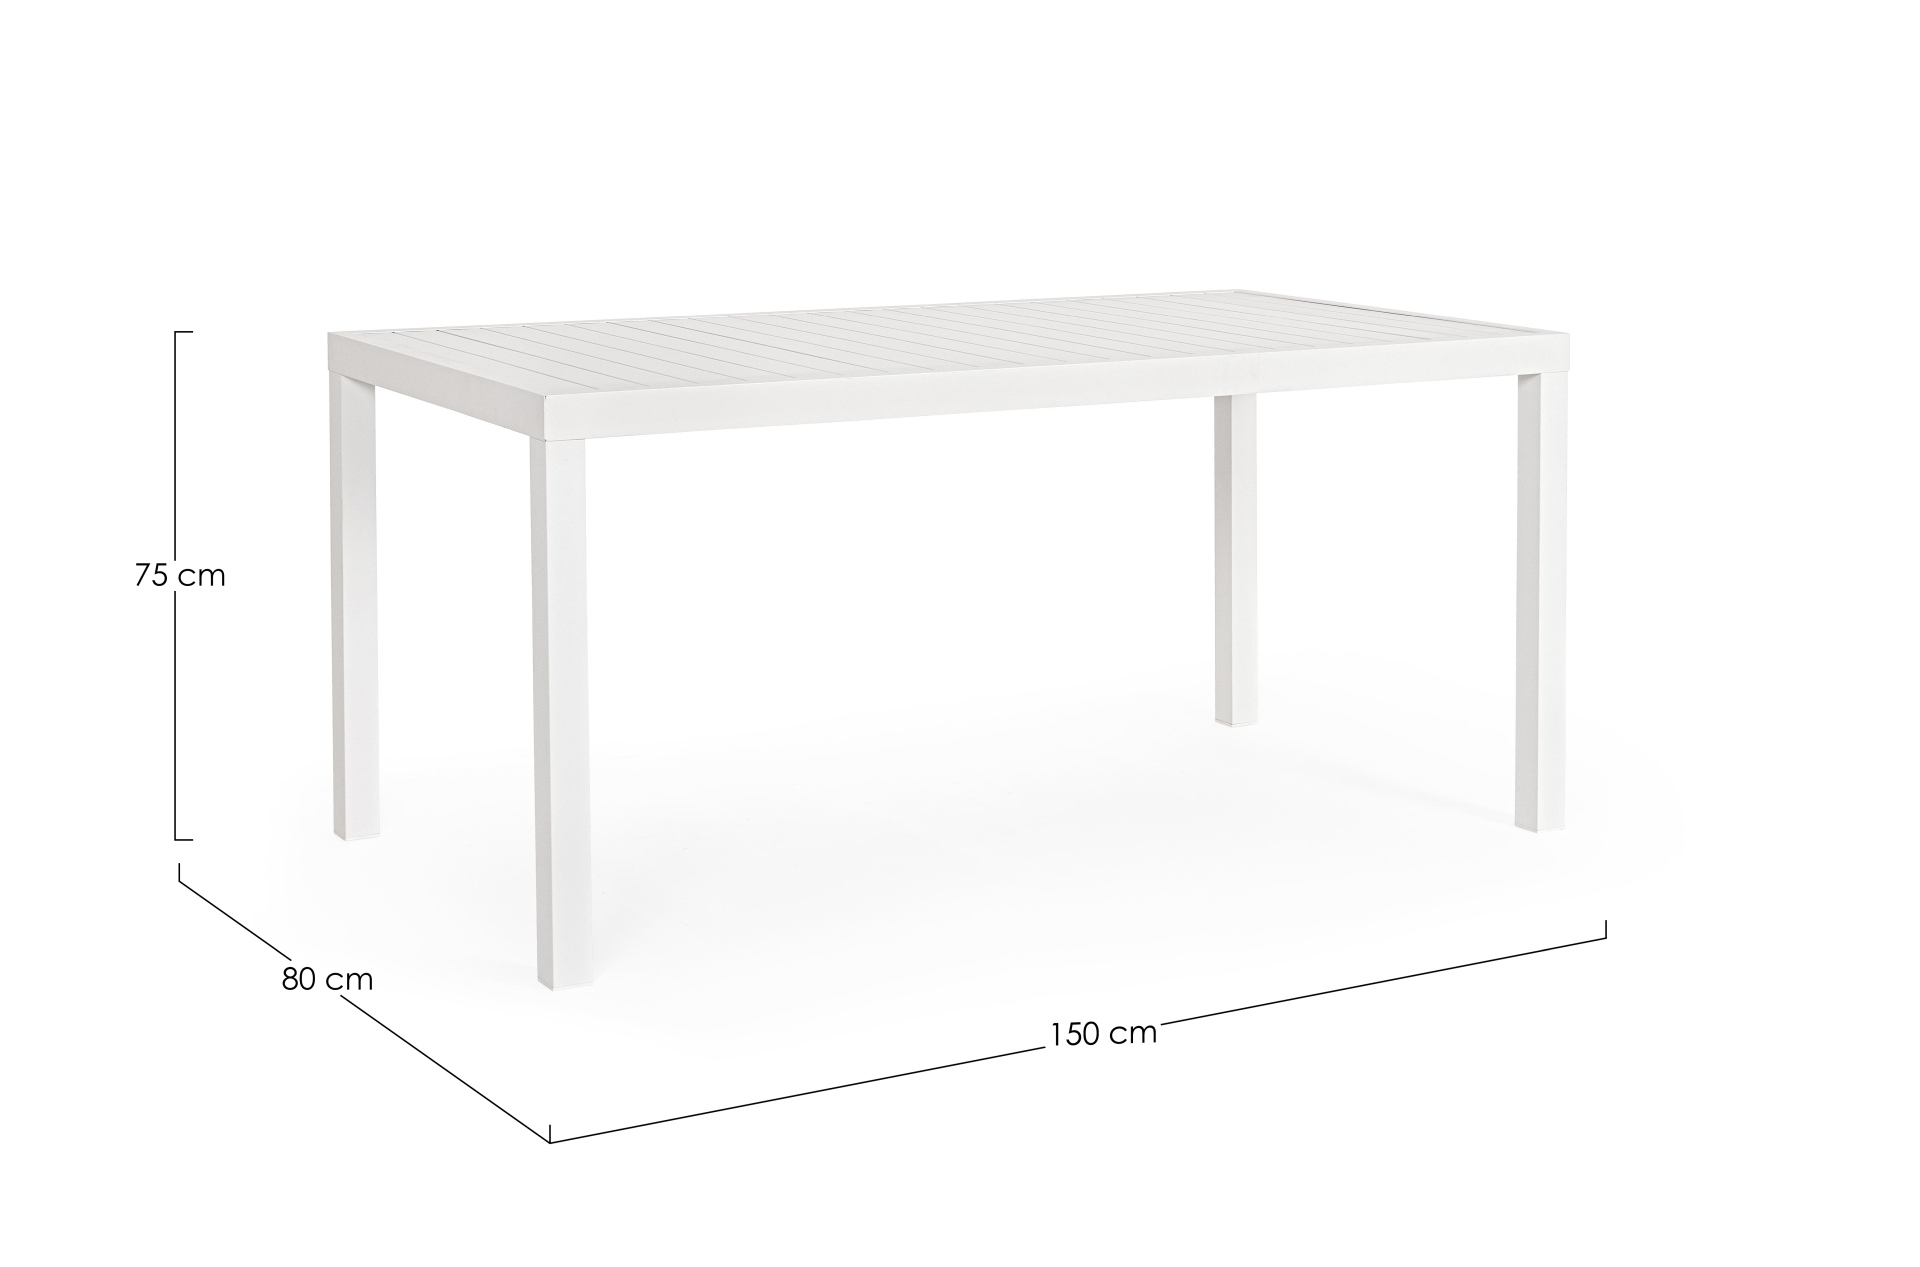 Der Gartentisch Hilde überzeugt mit seinem modernen Design. Gefertigt wurde er aus Aluminium, welches einen weißen Farbton besitzt. Das Gestell ist aus auch Aluminium und hat eine weiße Farbe. Der Tisch verfügt über eine Länge von 150 cm und ist für den O